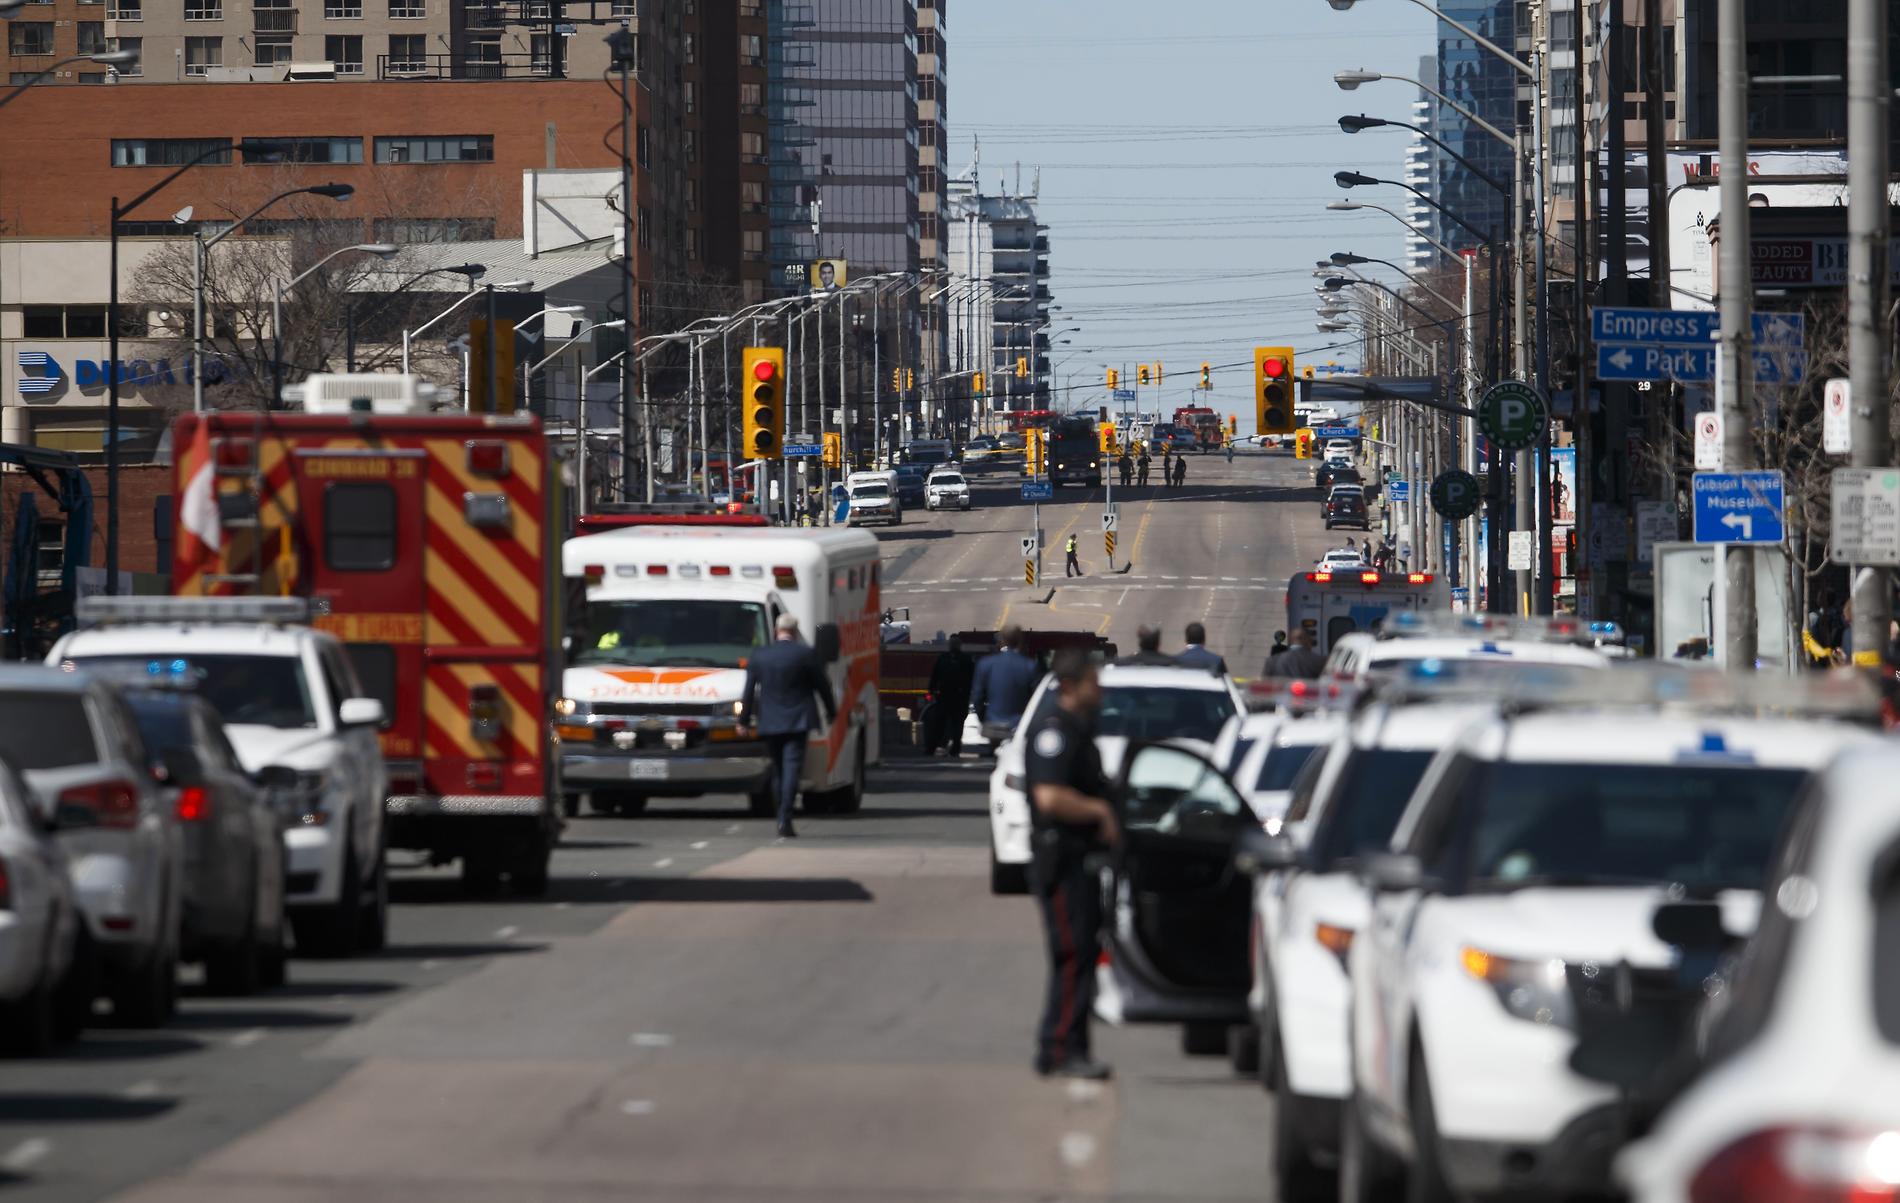 Många av offren i skåpbilsattacken i Toronto var kvinnor. Och 25-årige Alek Minassian som gripits som misstänkt för dådet ska ha gett uttryck för kvinnohat på Facebook